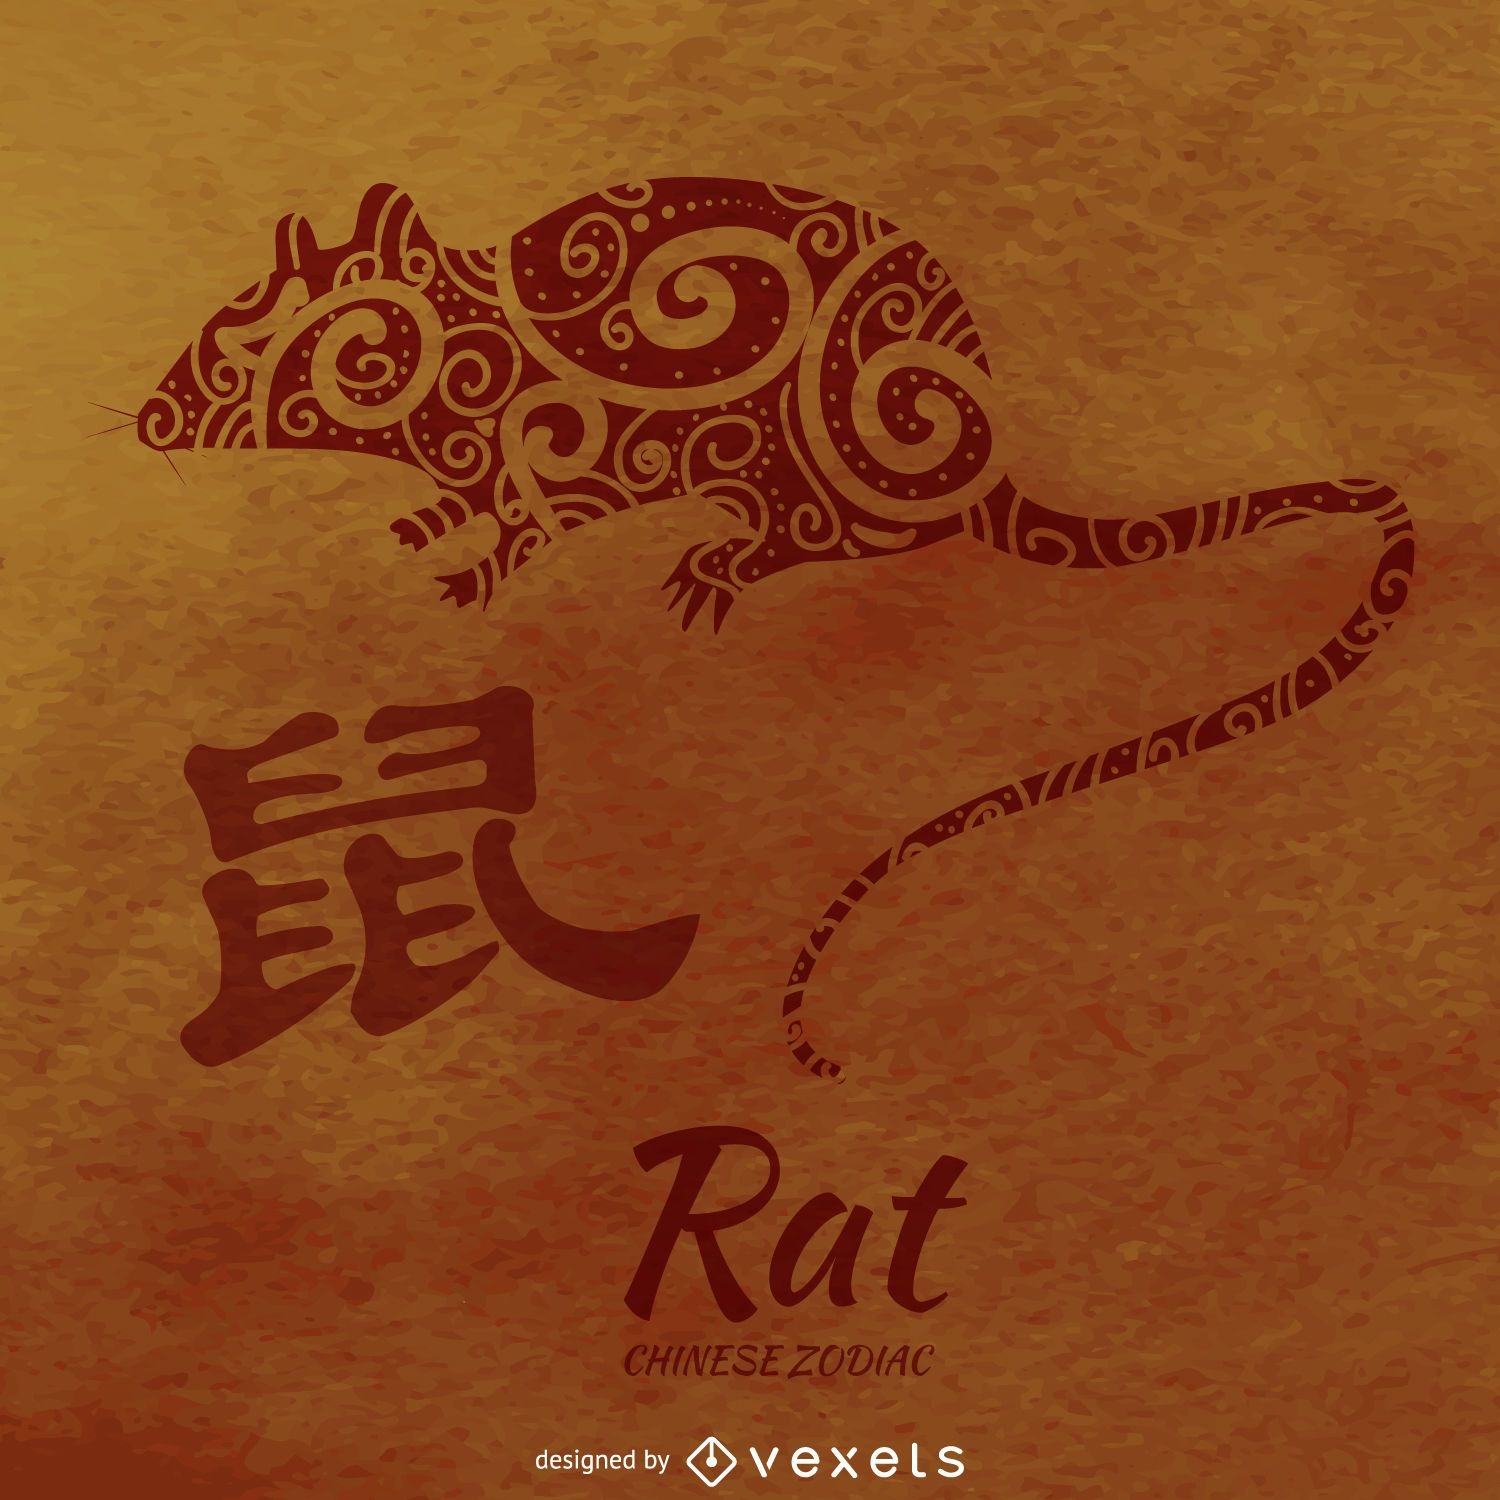 Ilustración de rata del zodiaco chino